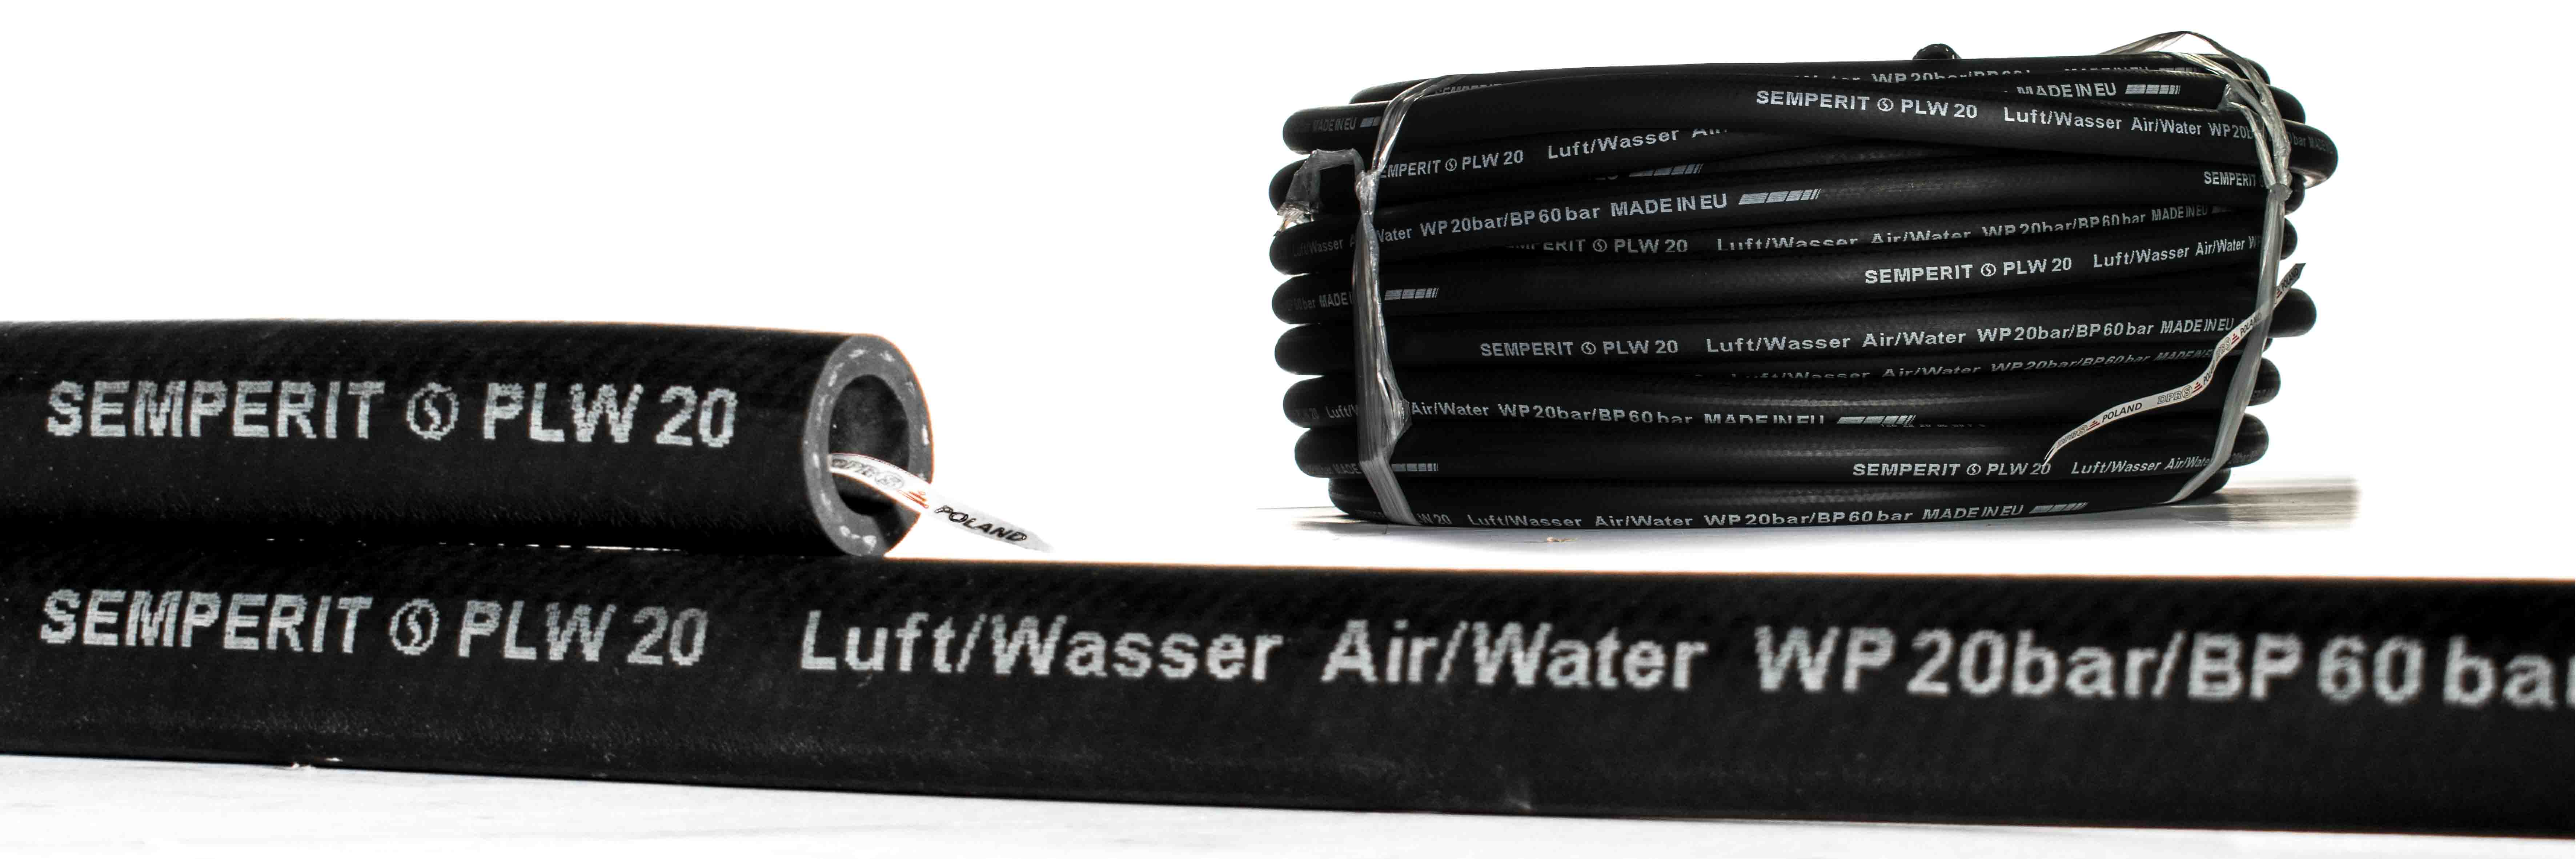 Wąż przemysłowy do powietrza i wody PLW20 20 BAR SEMPERIT